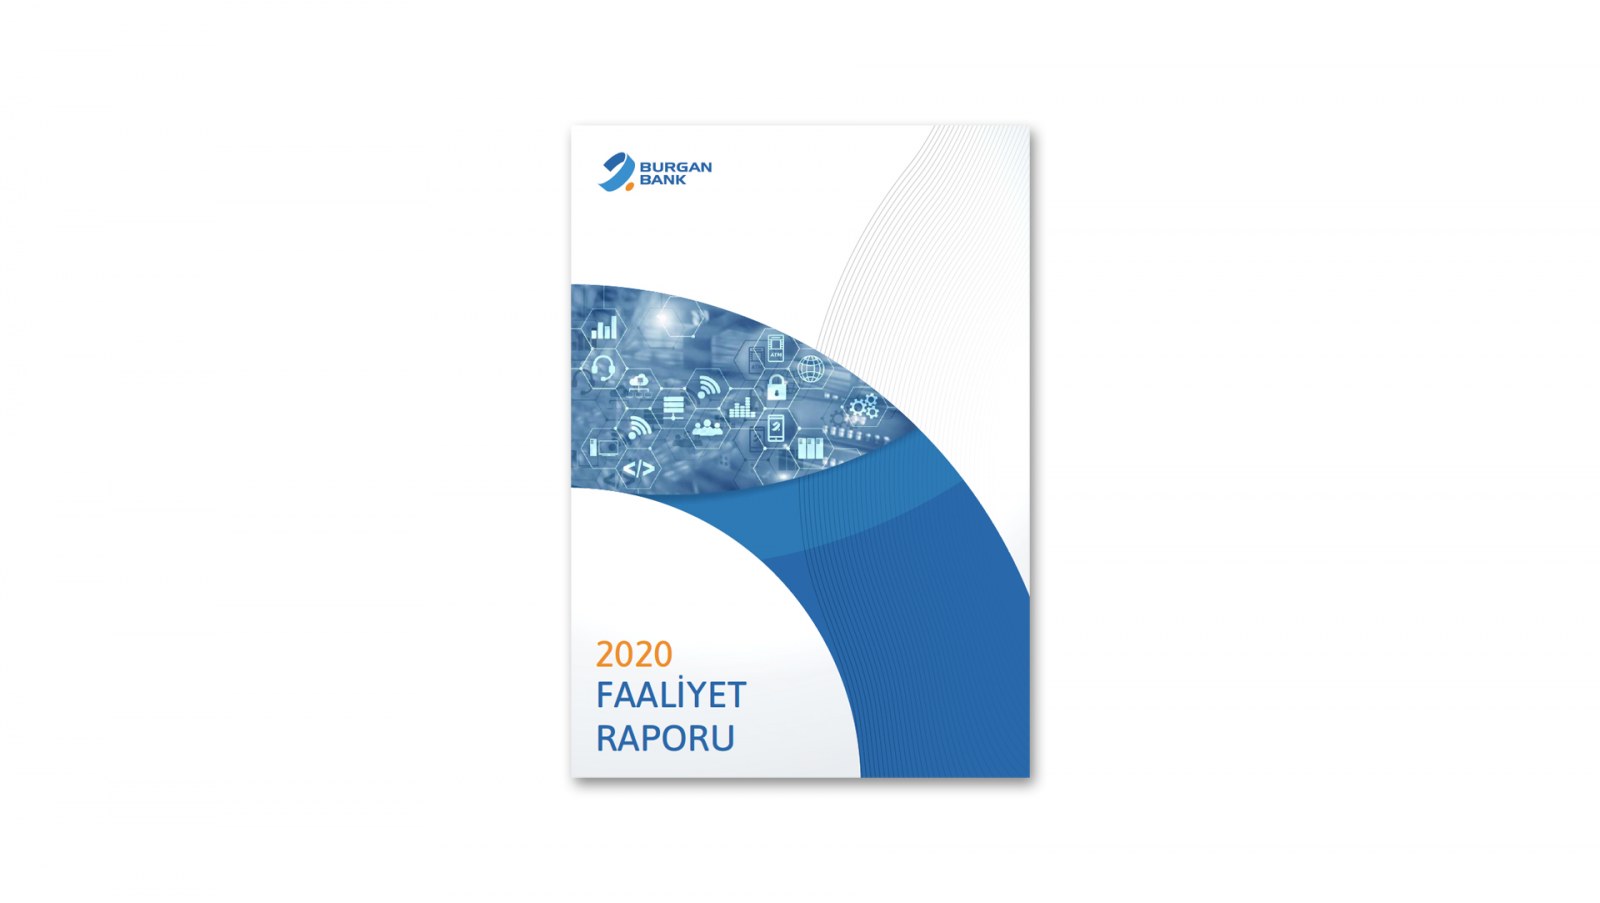 BURGAN BANK / 2020 Faaliyet Raporu / 2020 Annual Report